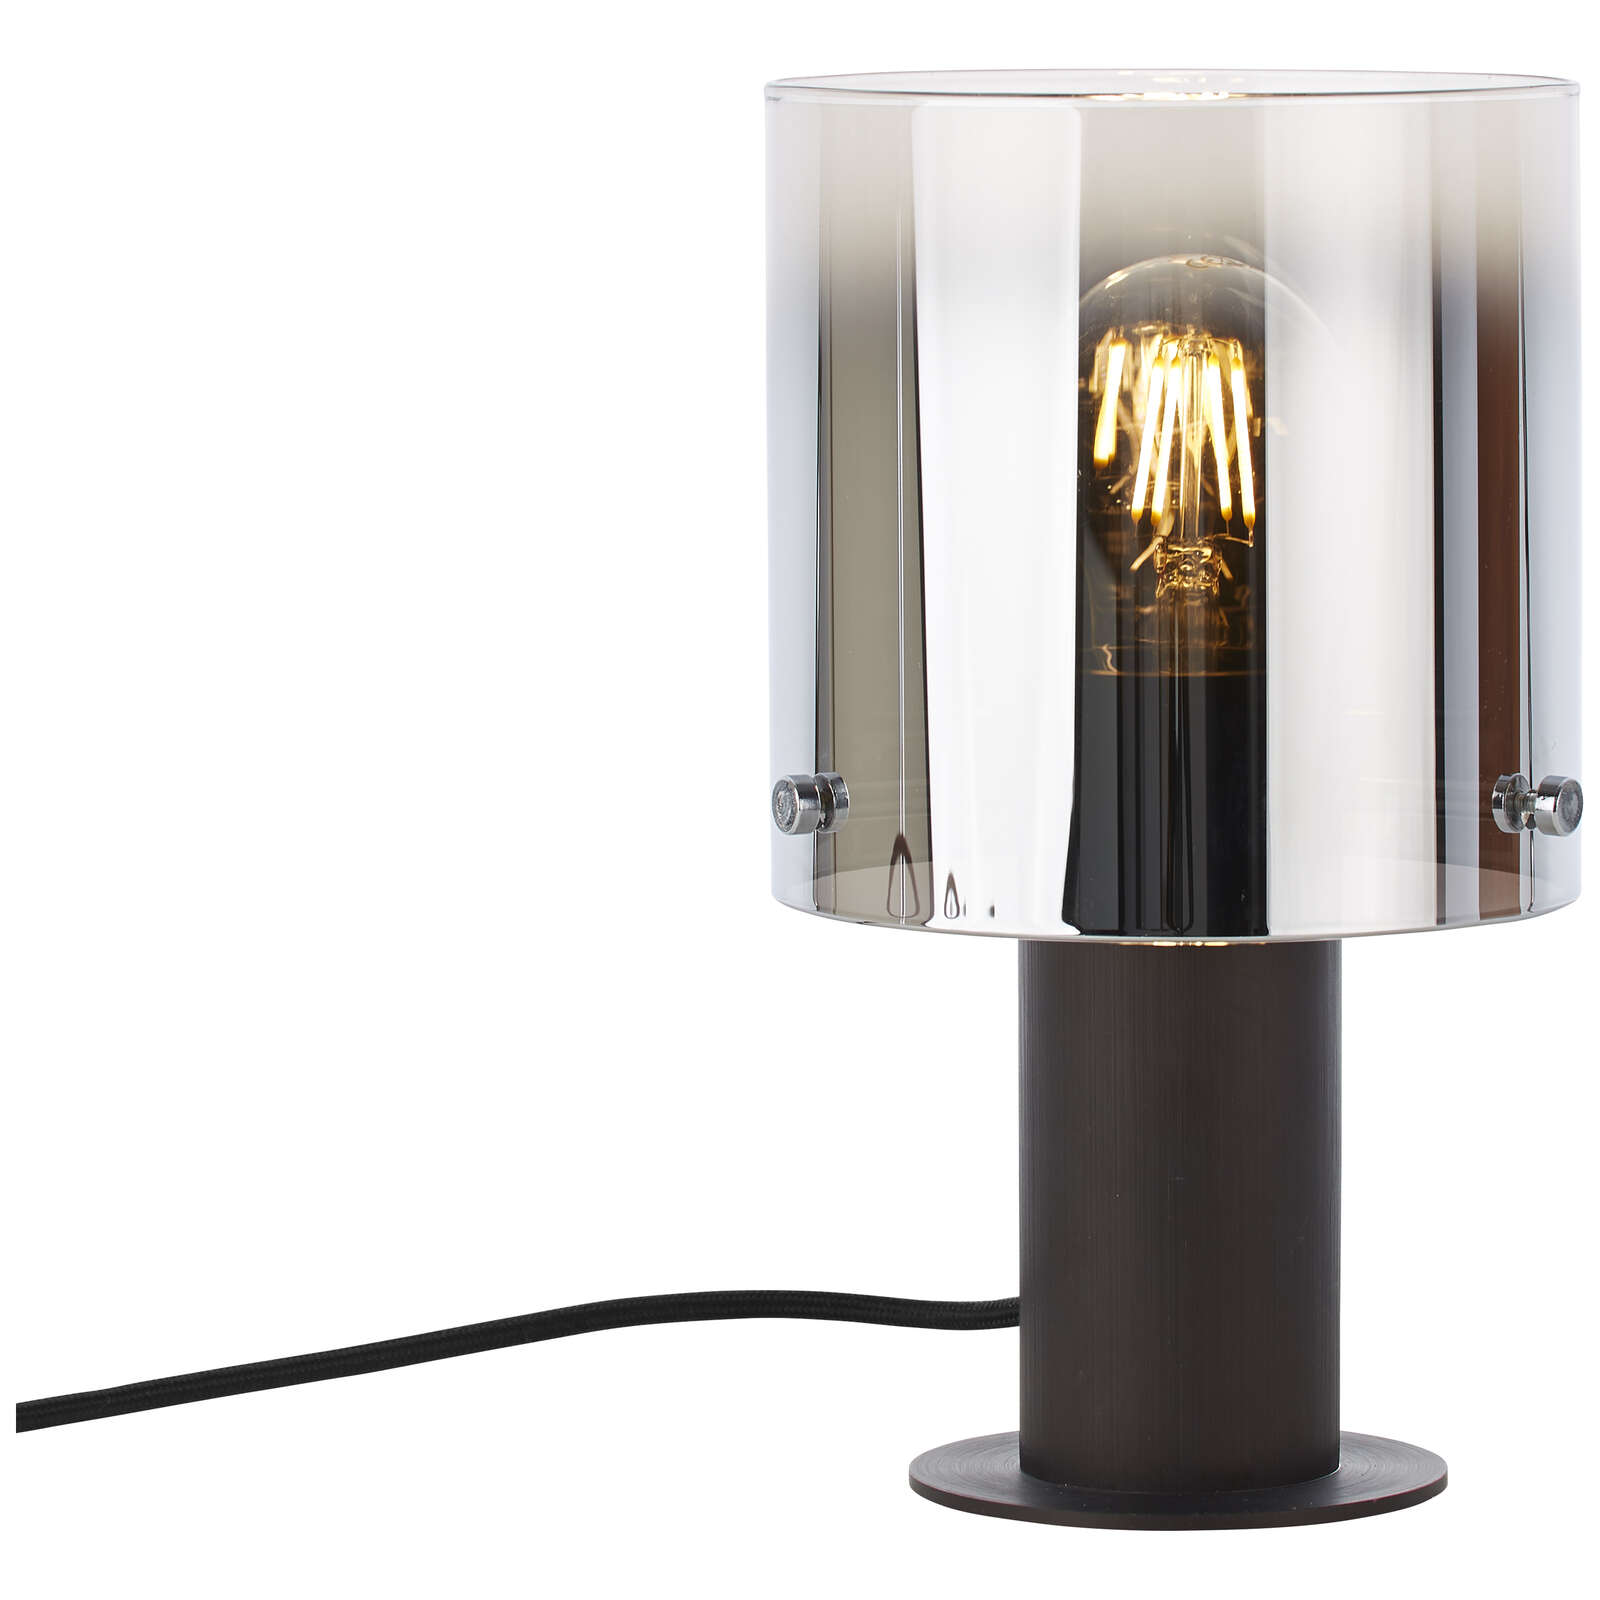             Glass table lamp - Benett 1 - Brown
        